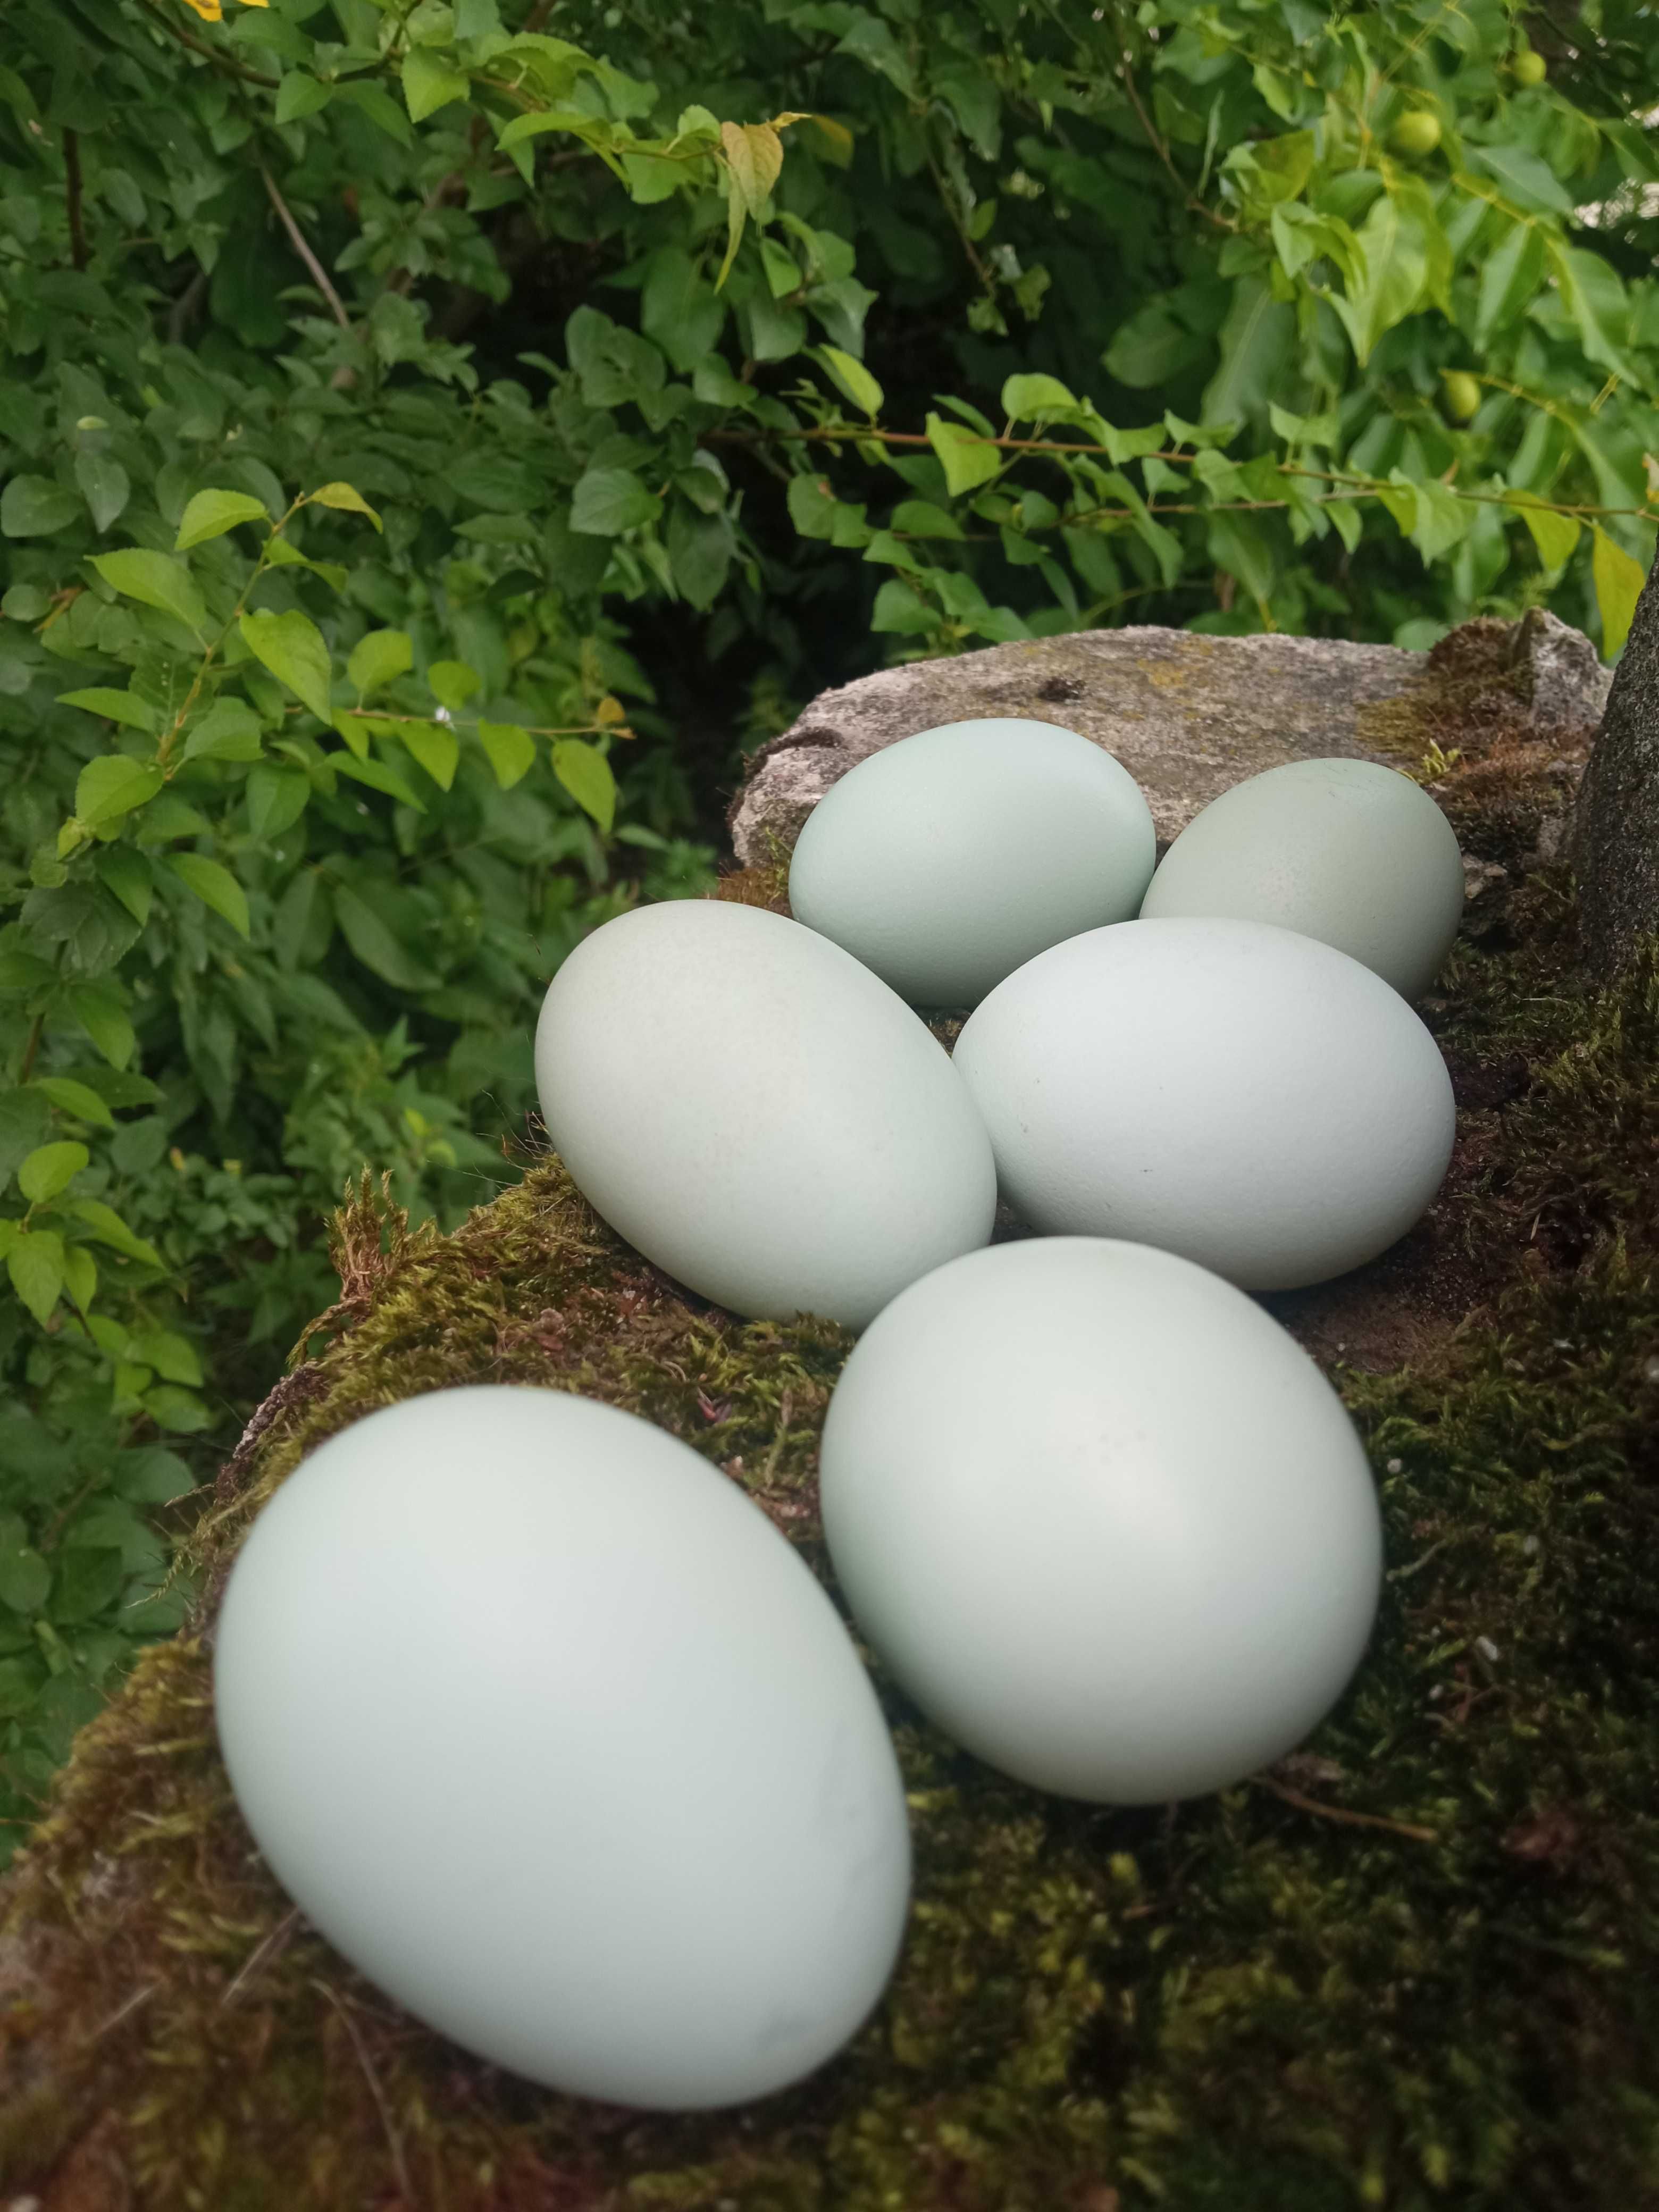 Wiejskie, ekologiczne jaja kur rasy araukana.